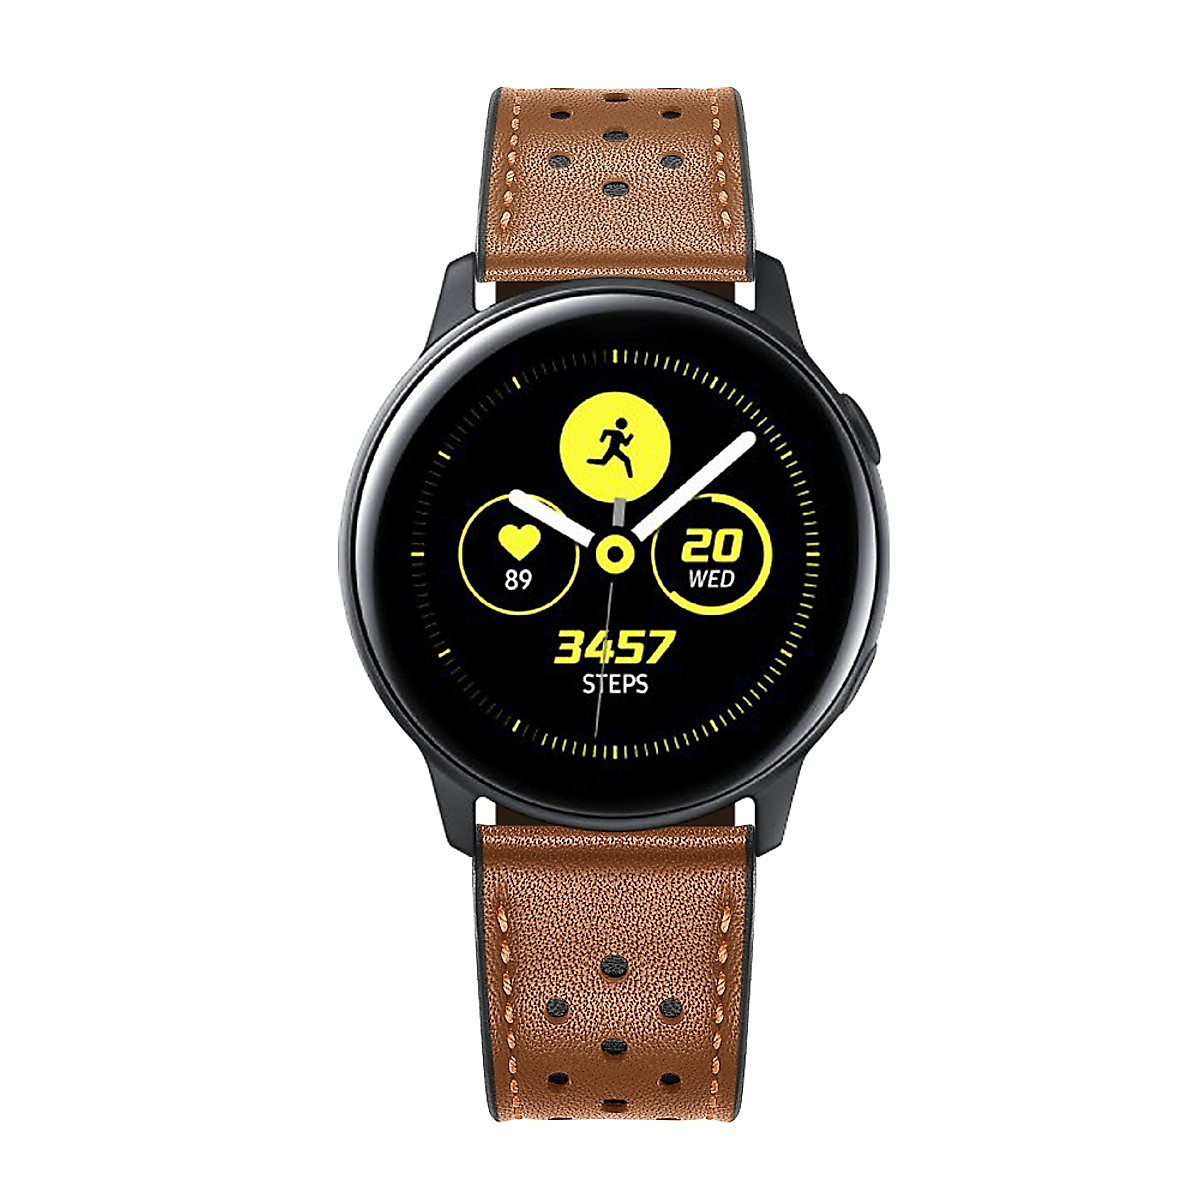 Dây Da Sport Leather Dành Cho Galaxy Watch 46, Huawei GT2, Huawei GT, Gear S3 (Size 22mm